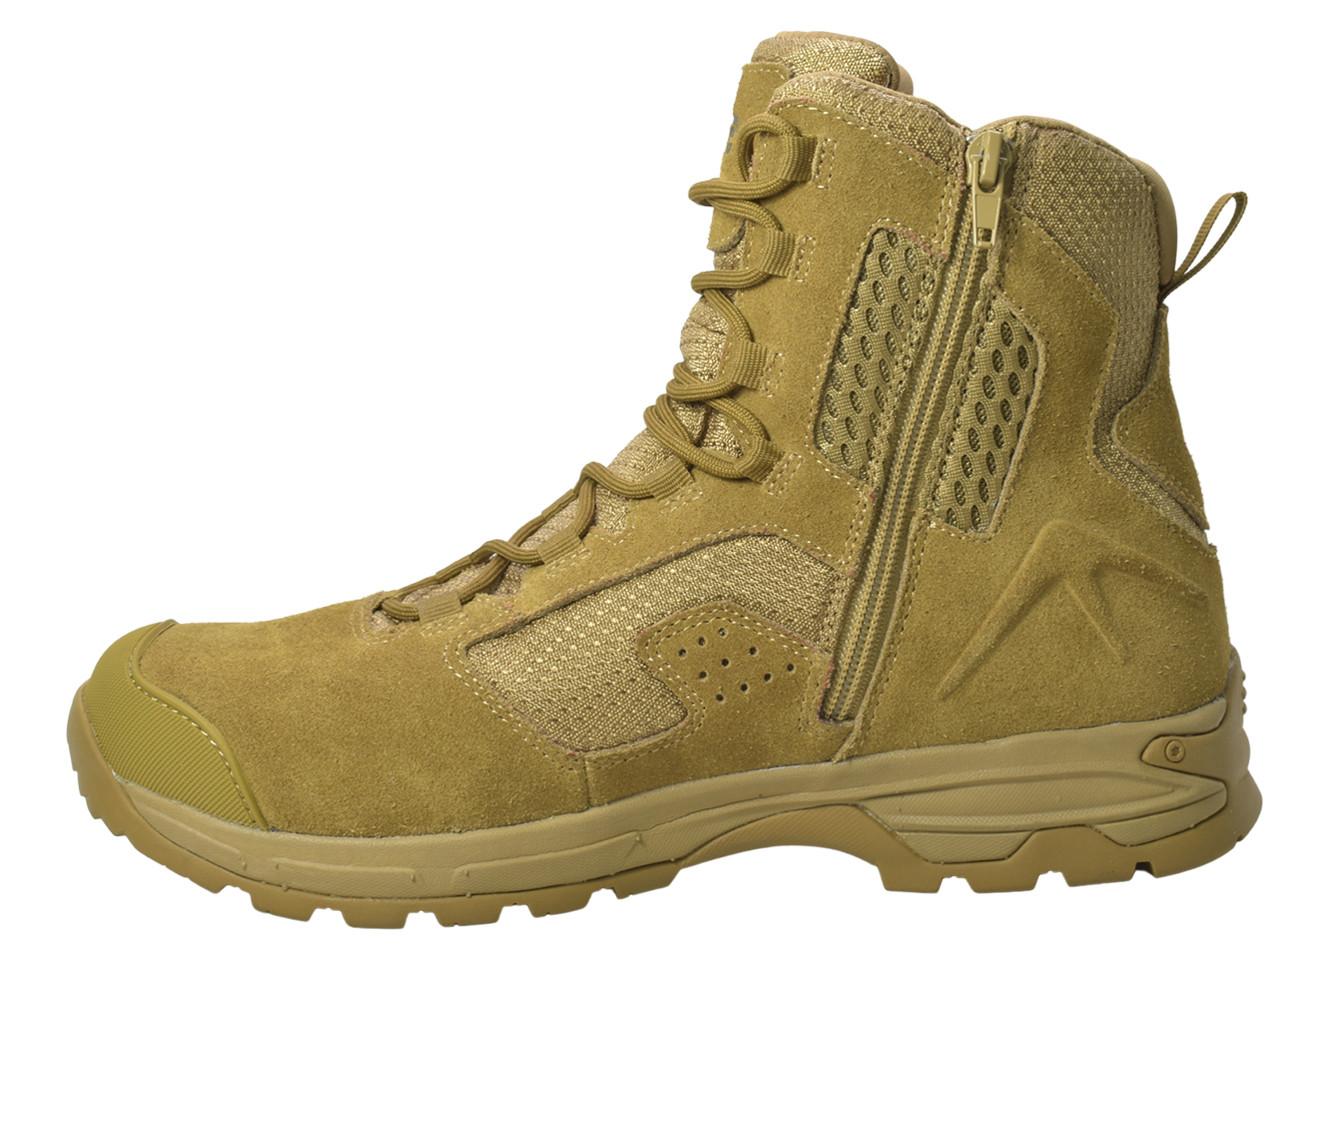 Men's AdTec 8" Suede Waterproof Tactical Work Boots